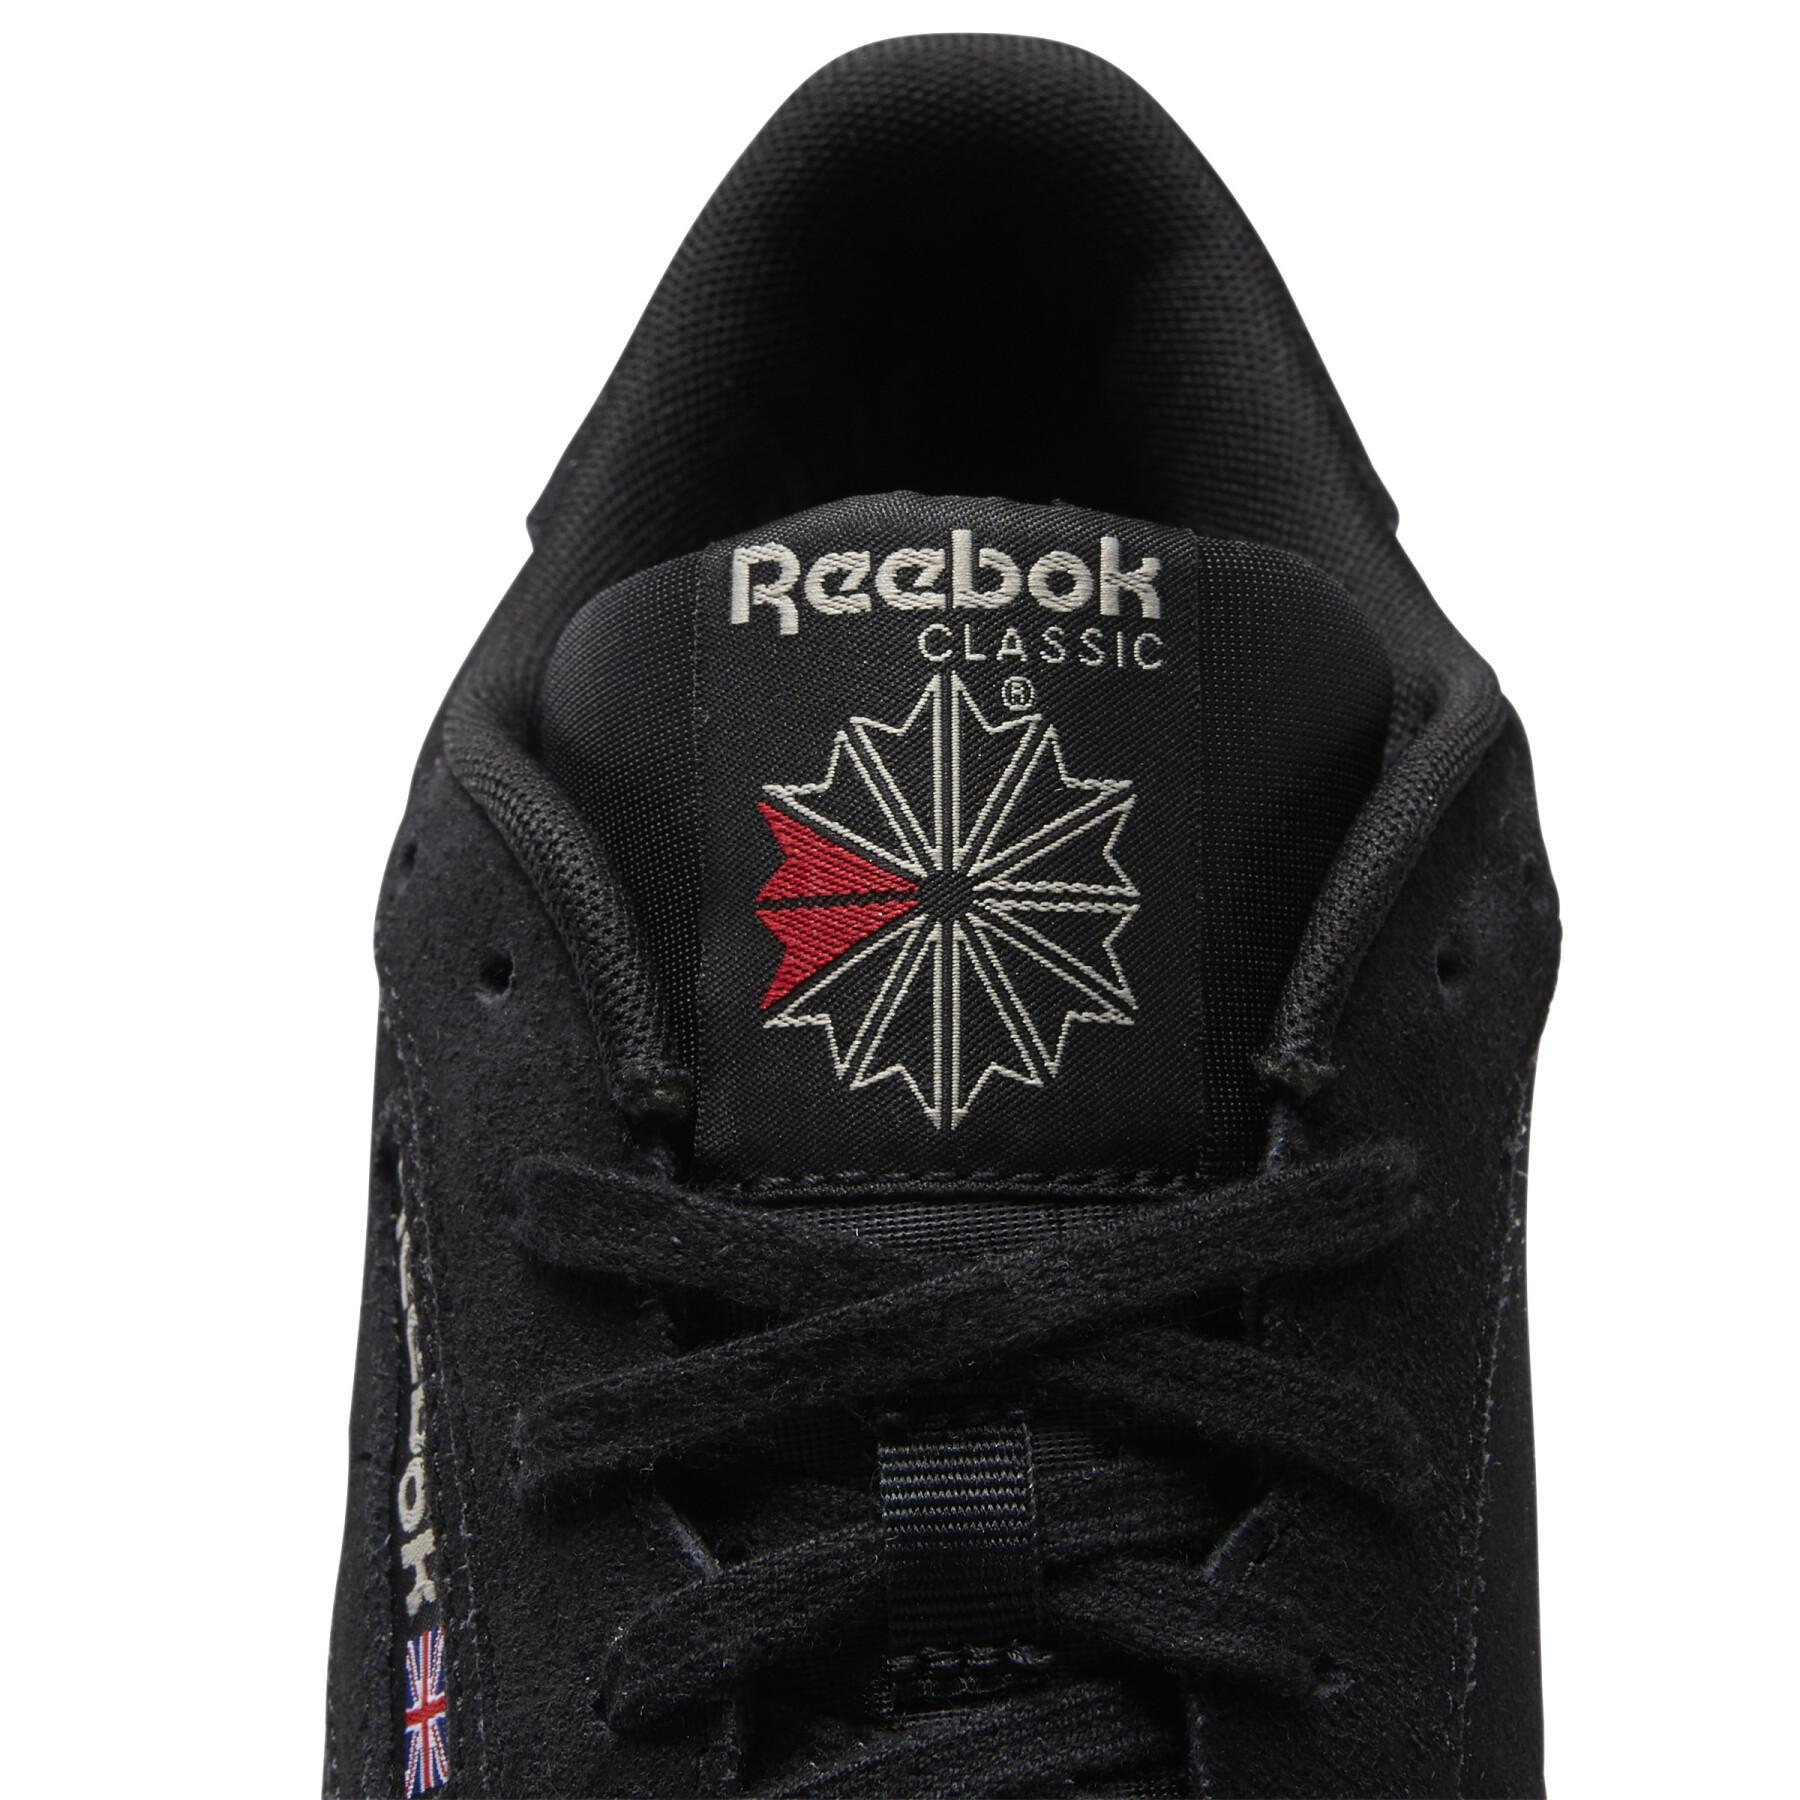 Schuhe Reebok Club C85